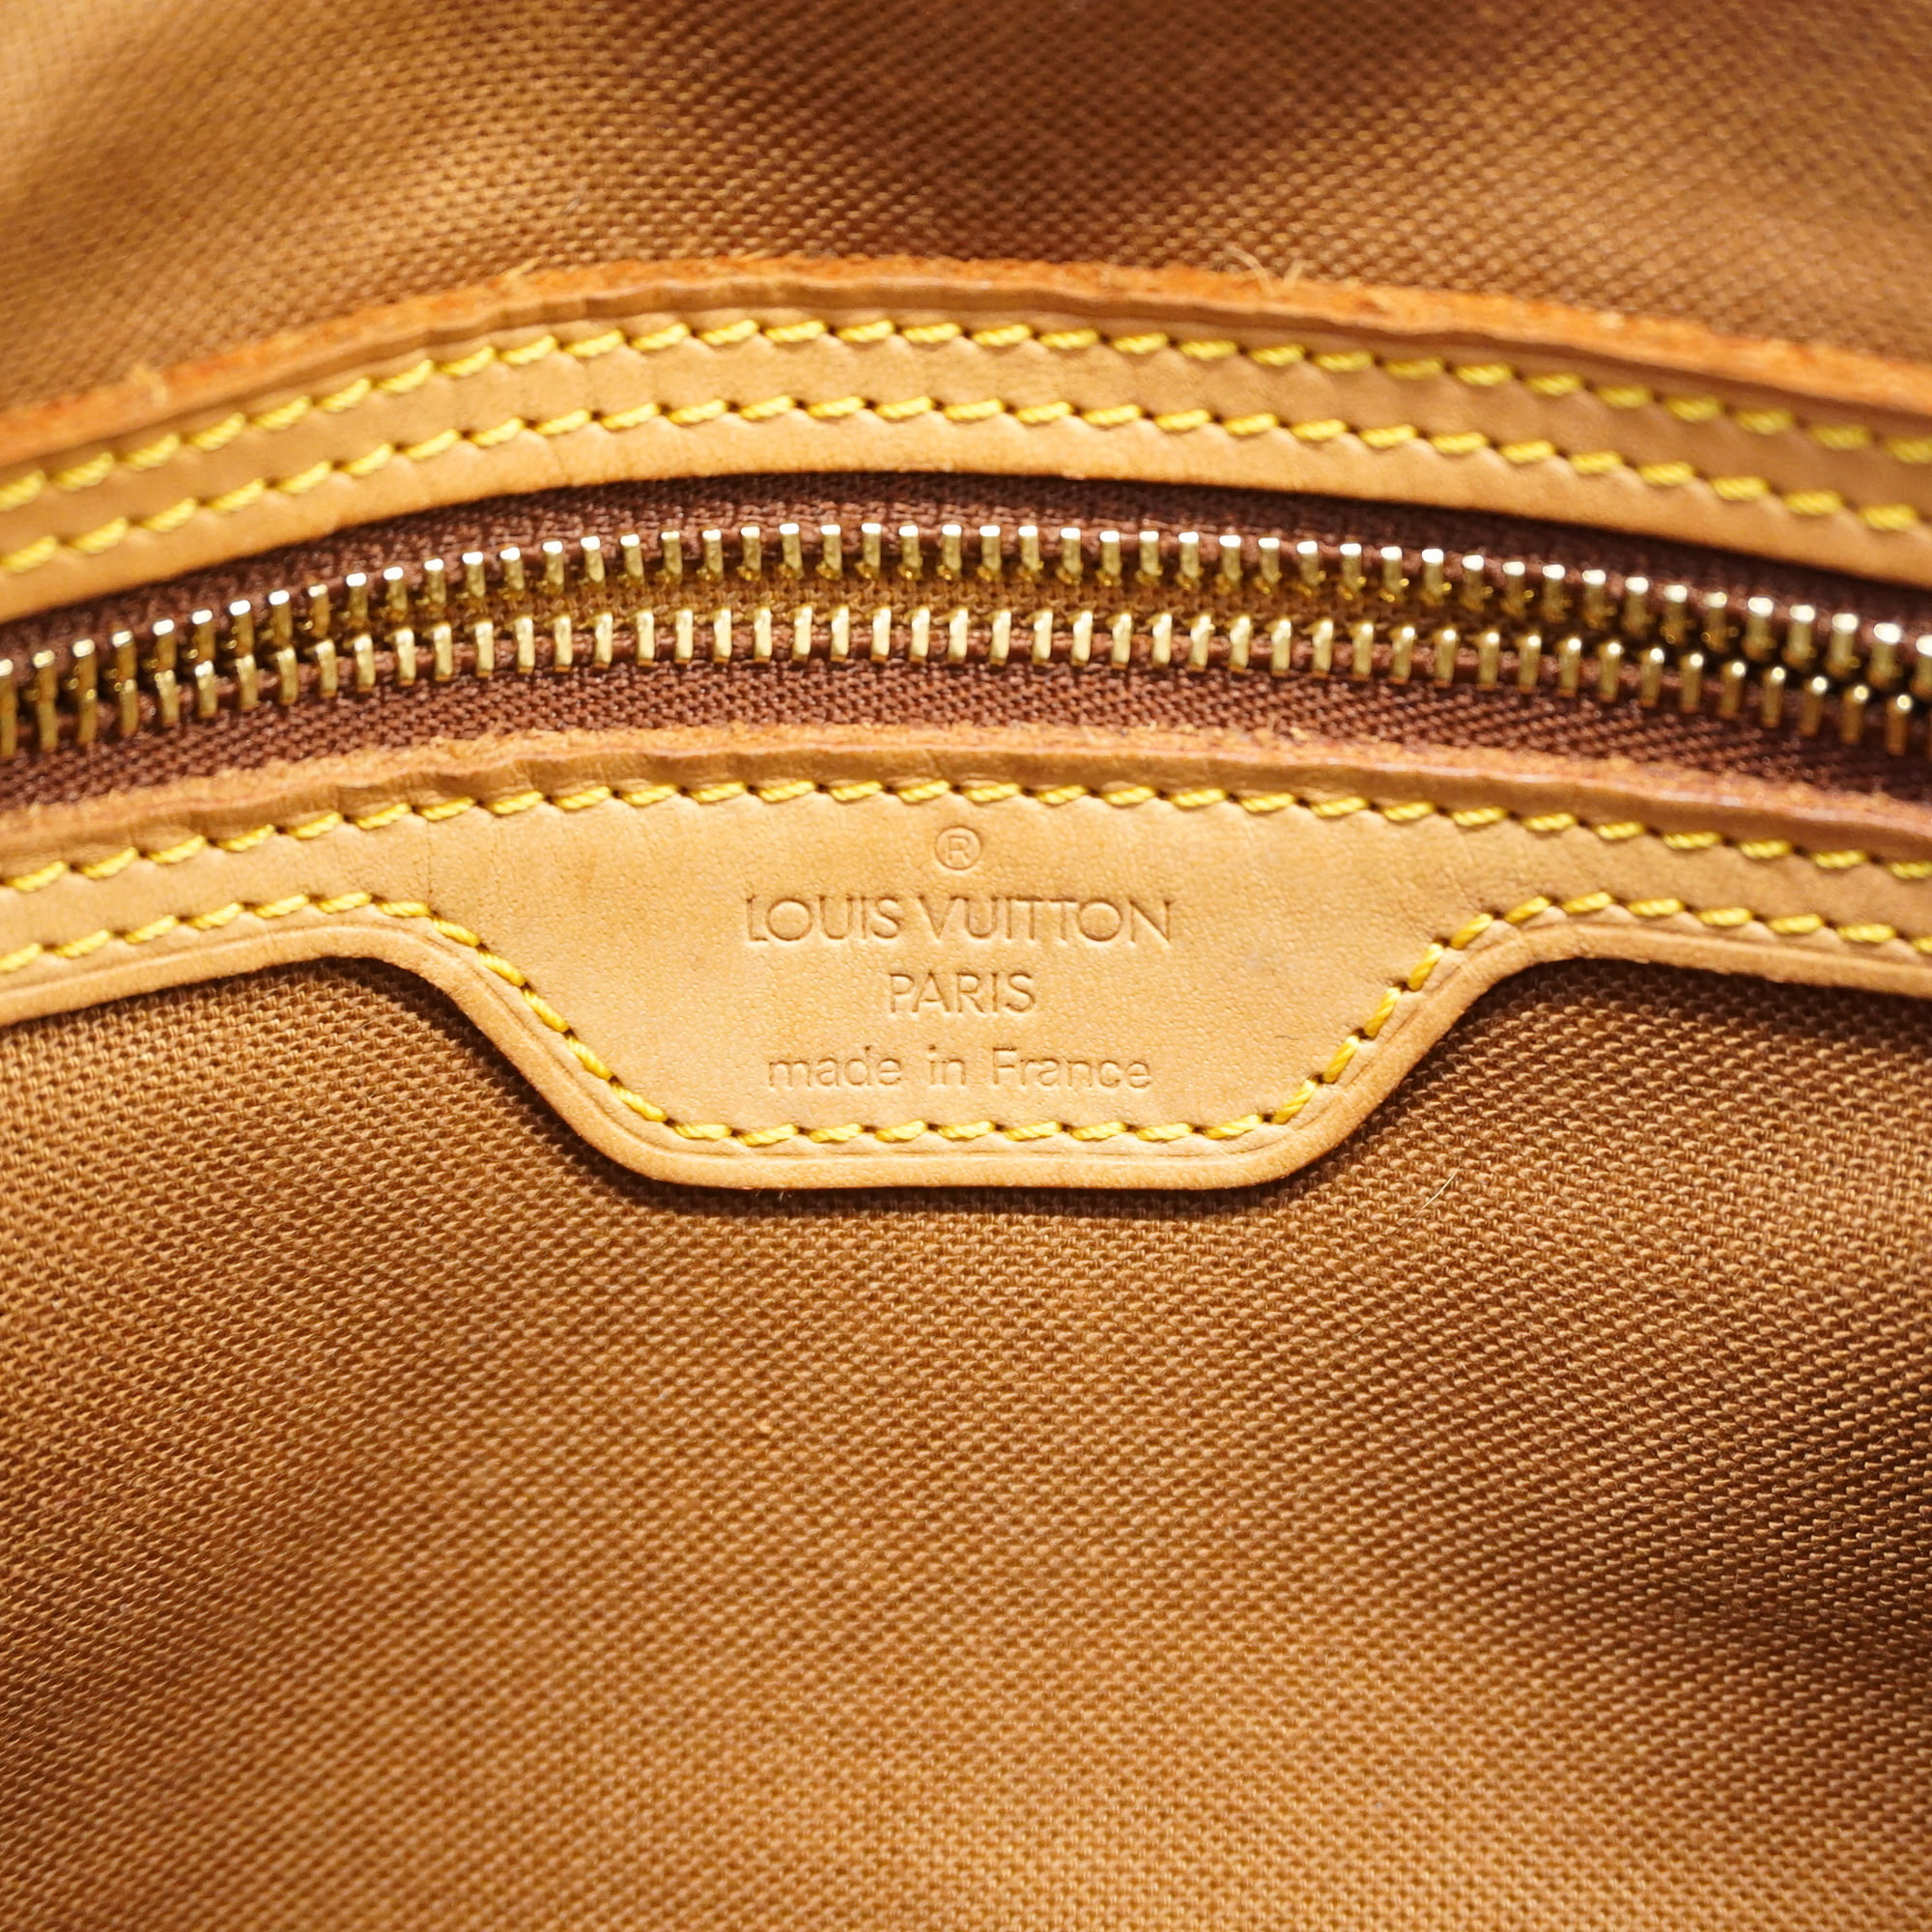 Authenticated used Louis Vuitton Monogram Mini Looping M51147 Handbag LV 0015 Louis Vuitton, Adult Unisex, Size: (HxWxD): 16cm x 28cm x 9cm / 6.29'' x